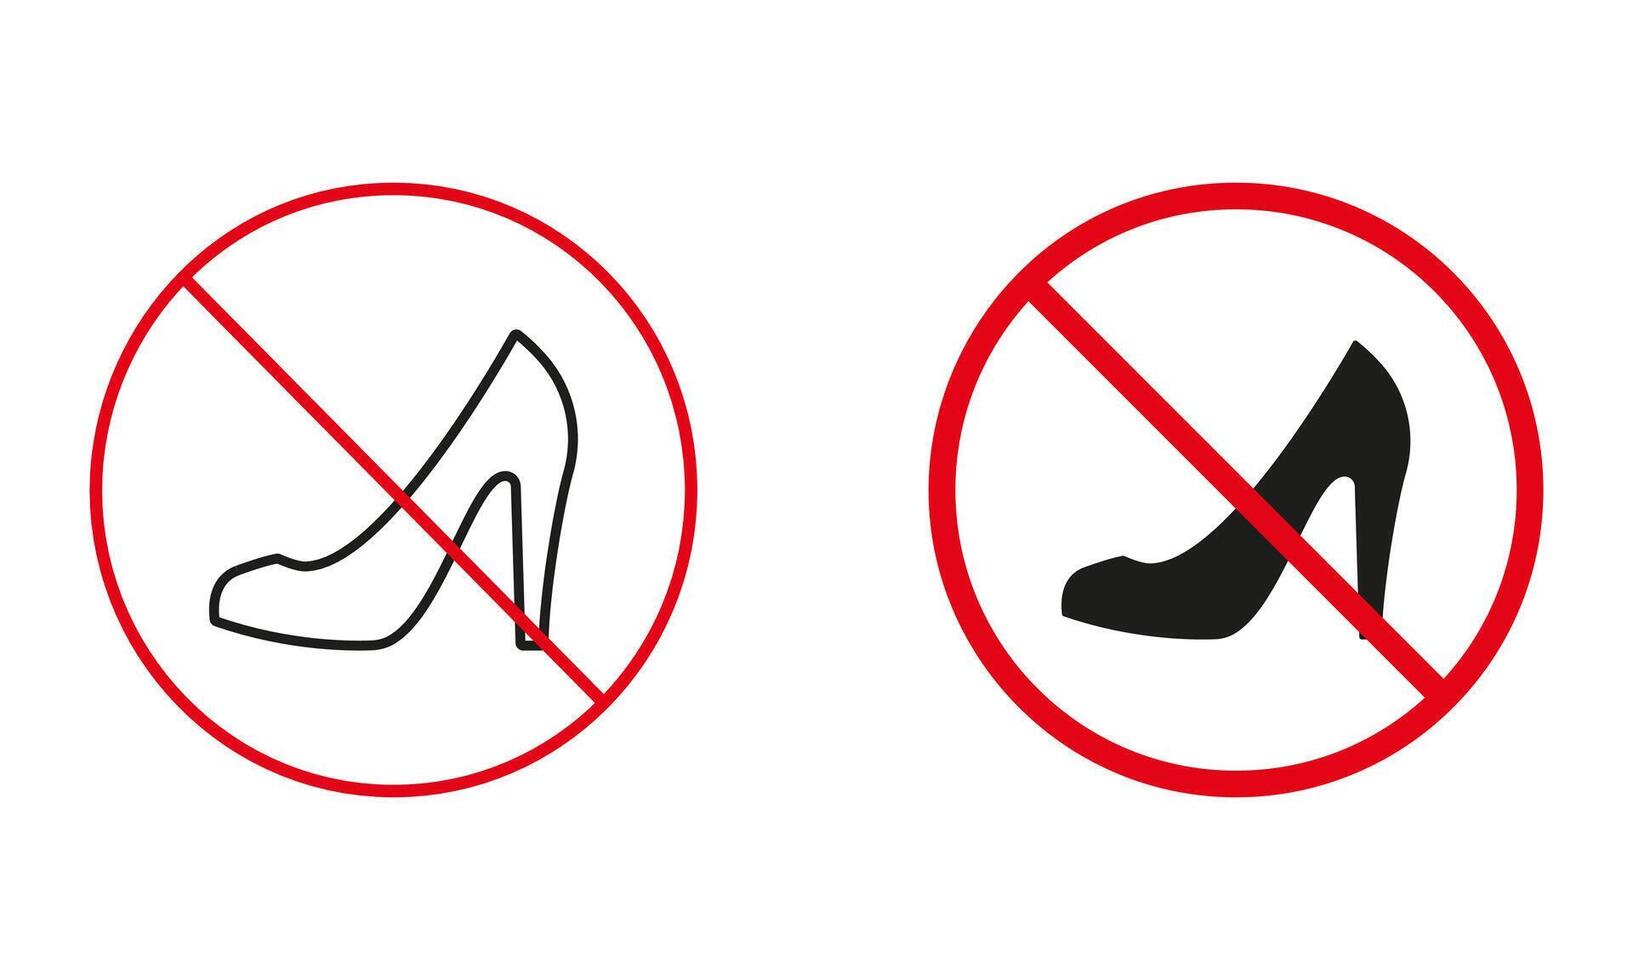 hoog hakken niet toegestaan, vrouw paar- schoenen waarschuwing teken set. Dames schoen verbieden, elegant schoenen lijn en silhouet pictogrammen. klassiek stiletto verboden symbool. geïsoleerd vector illustratie